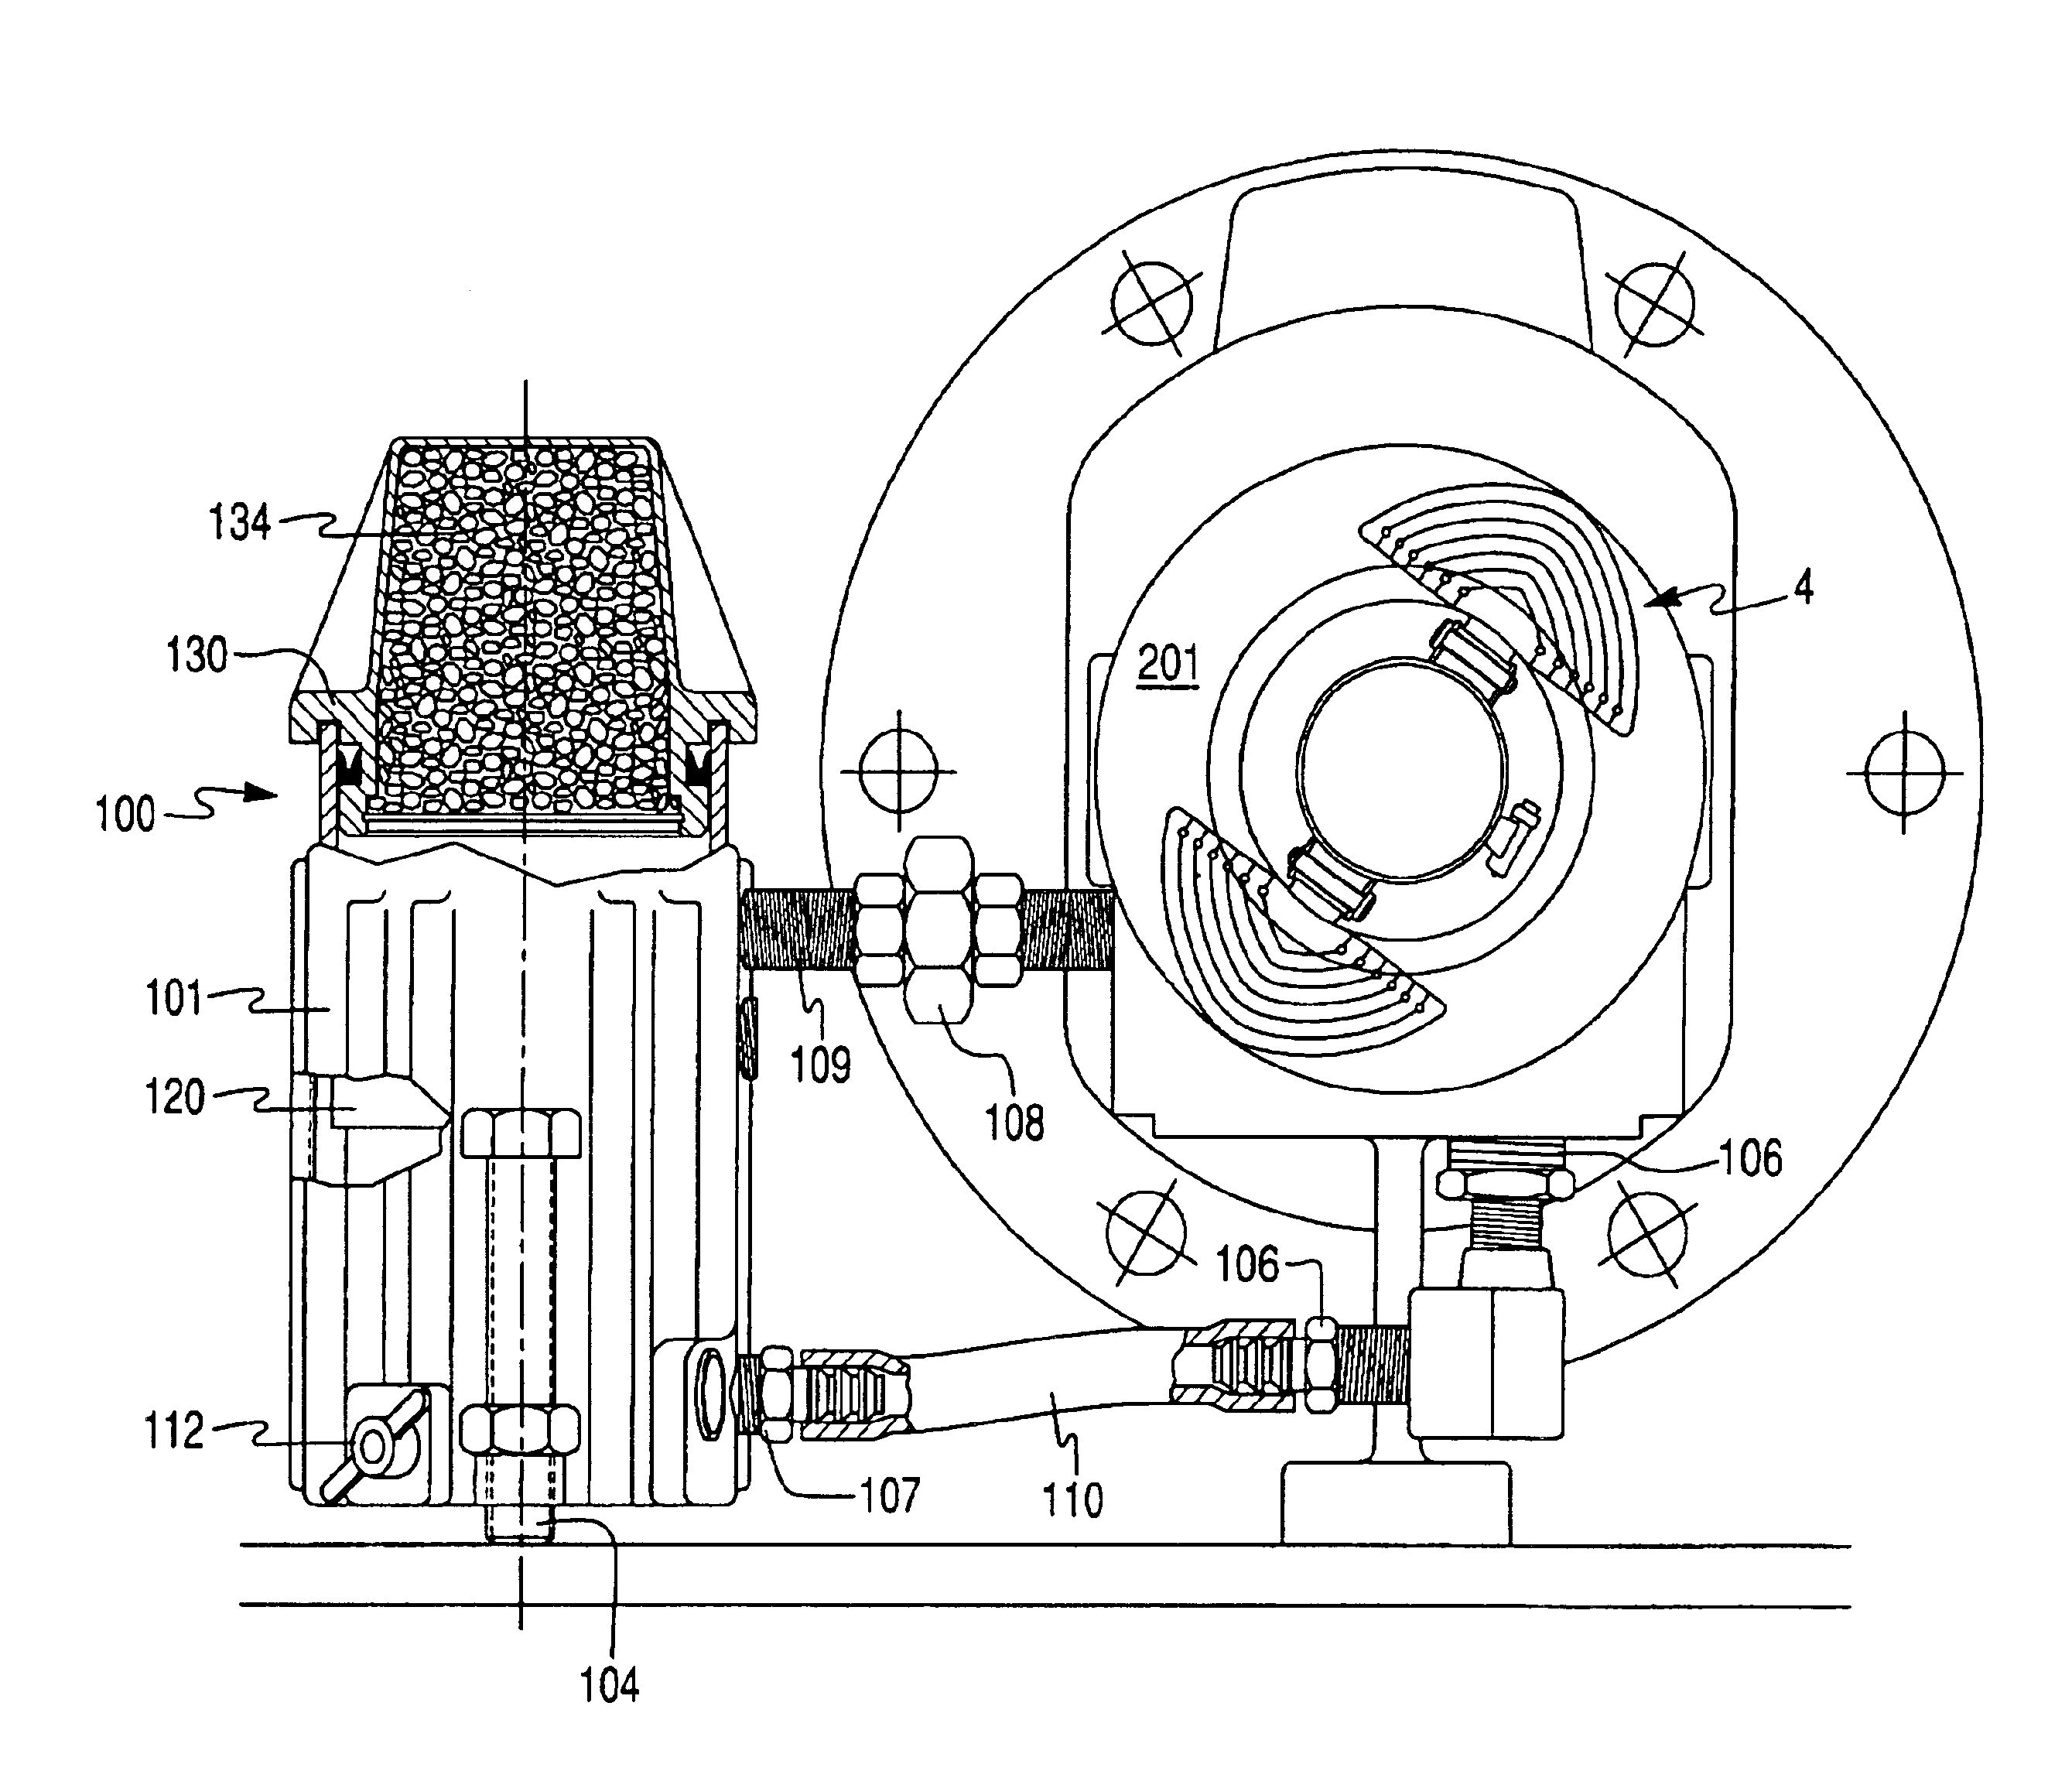 Pump lubrication system including an external reservoir